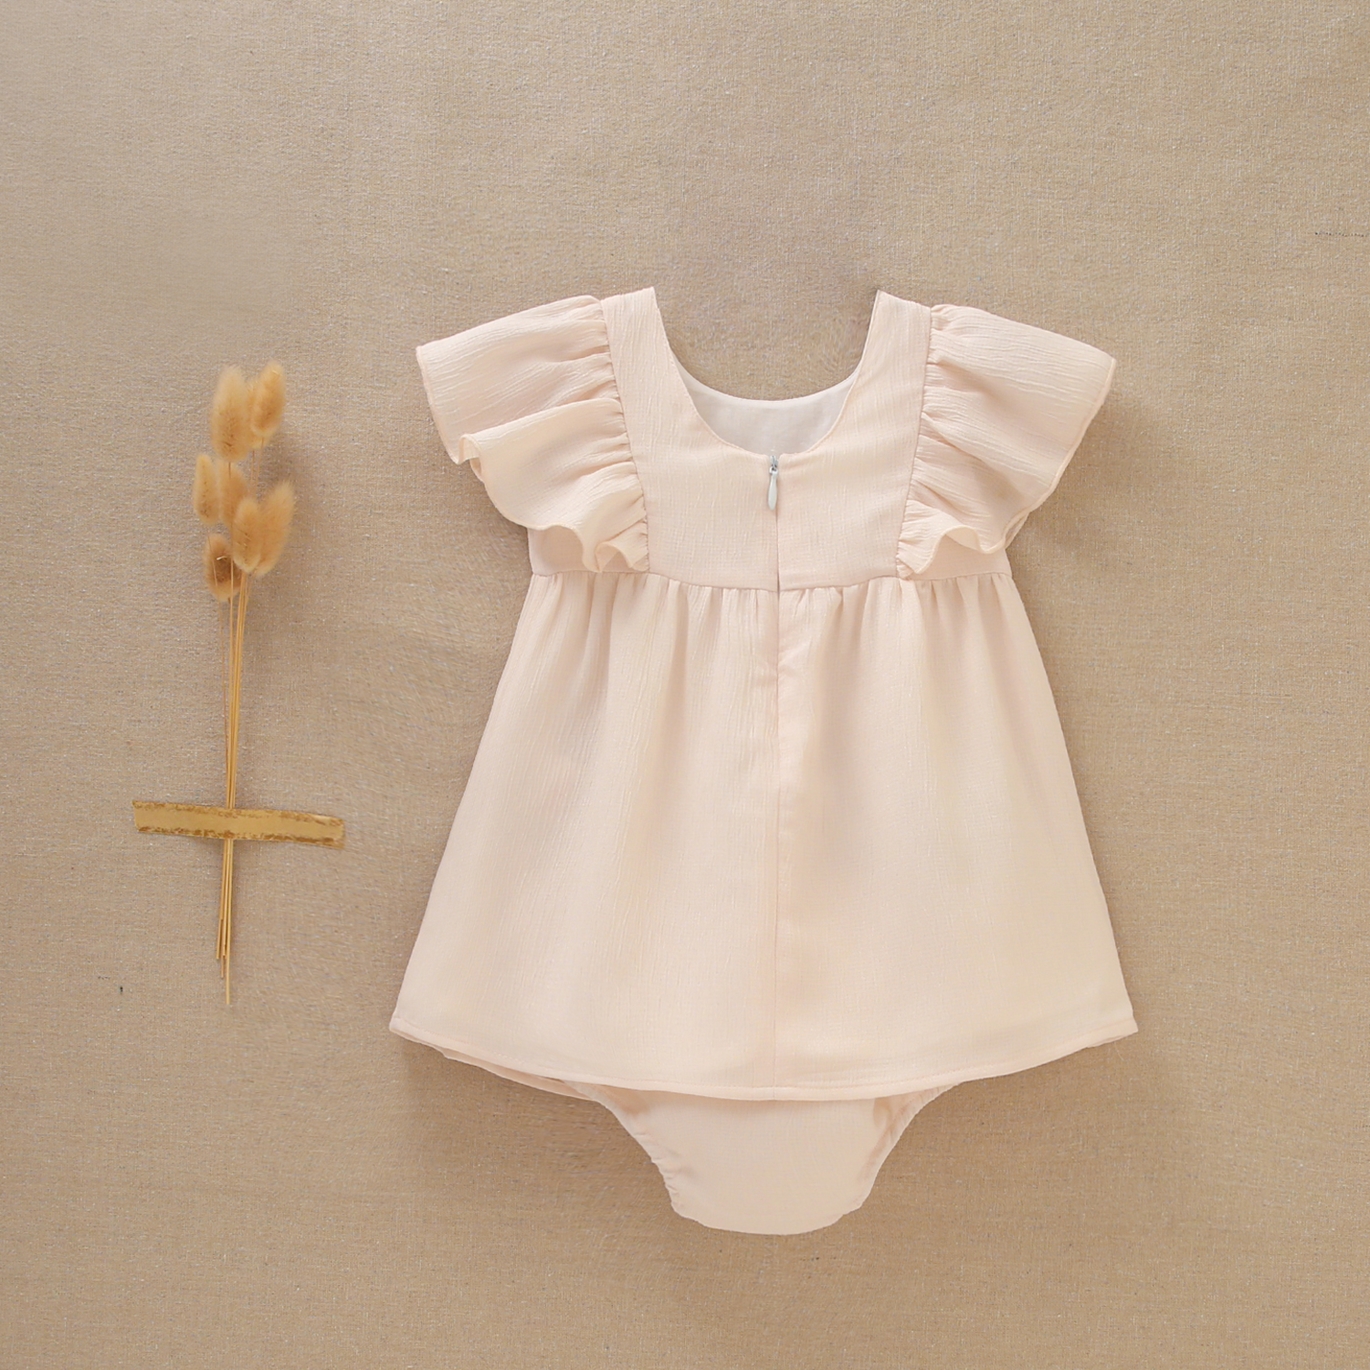 Imagen de Vestido de bebé niña estilo jesusito en gasa en color beige